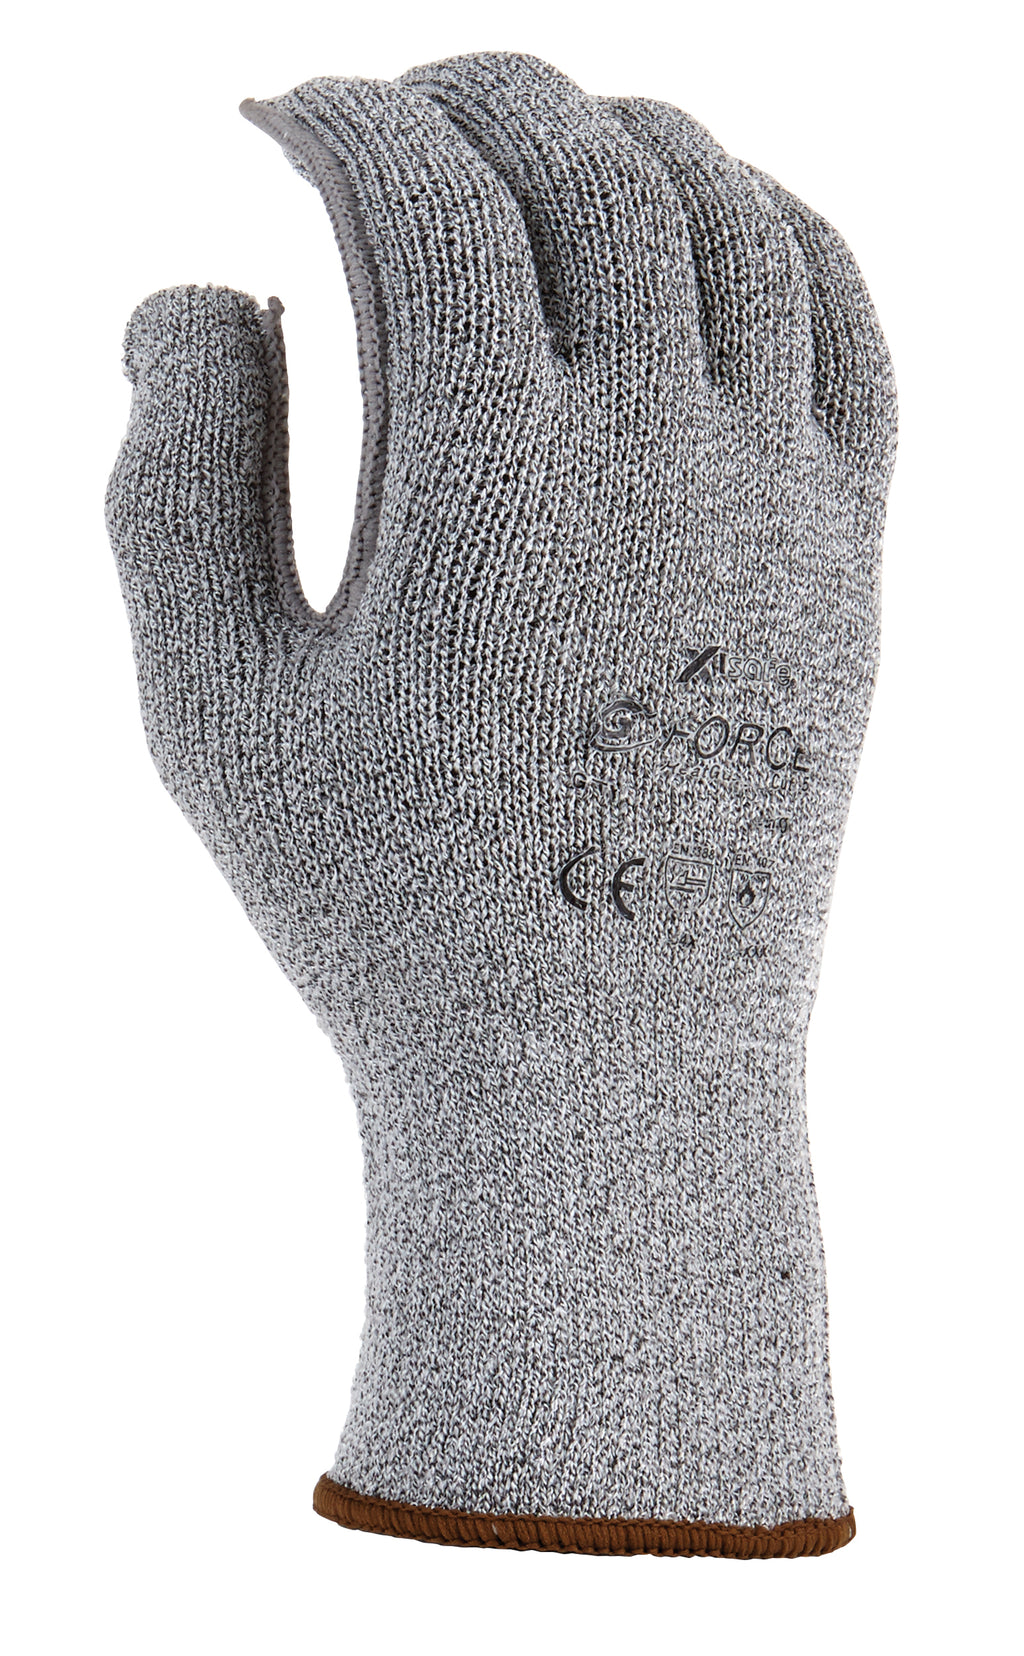 G-Force HeatGuard Cut 5 Glove